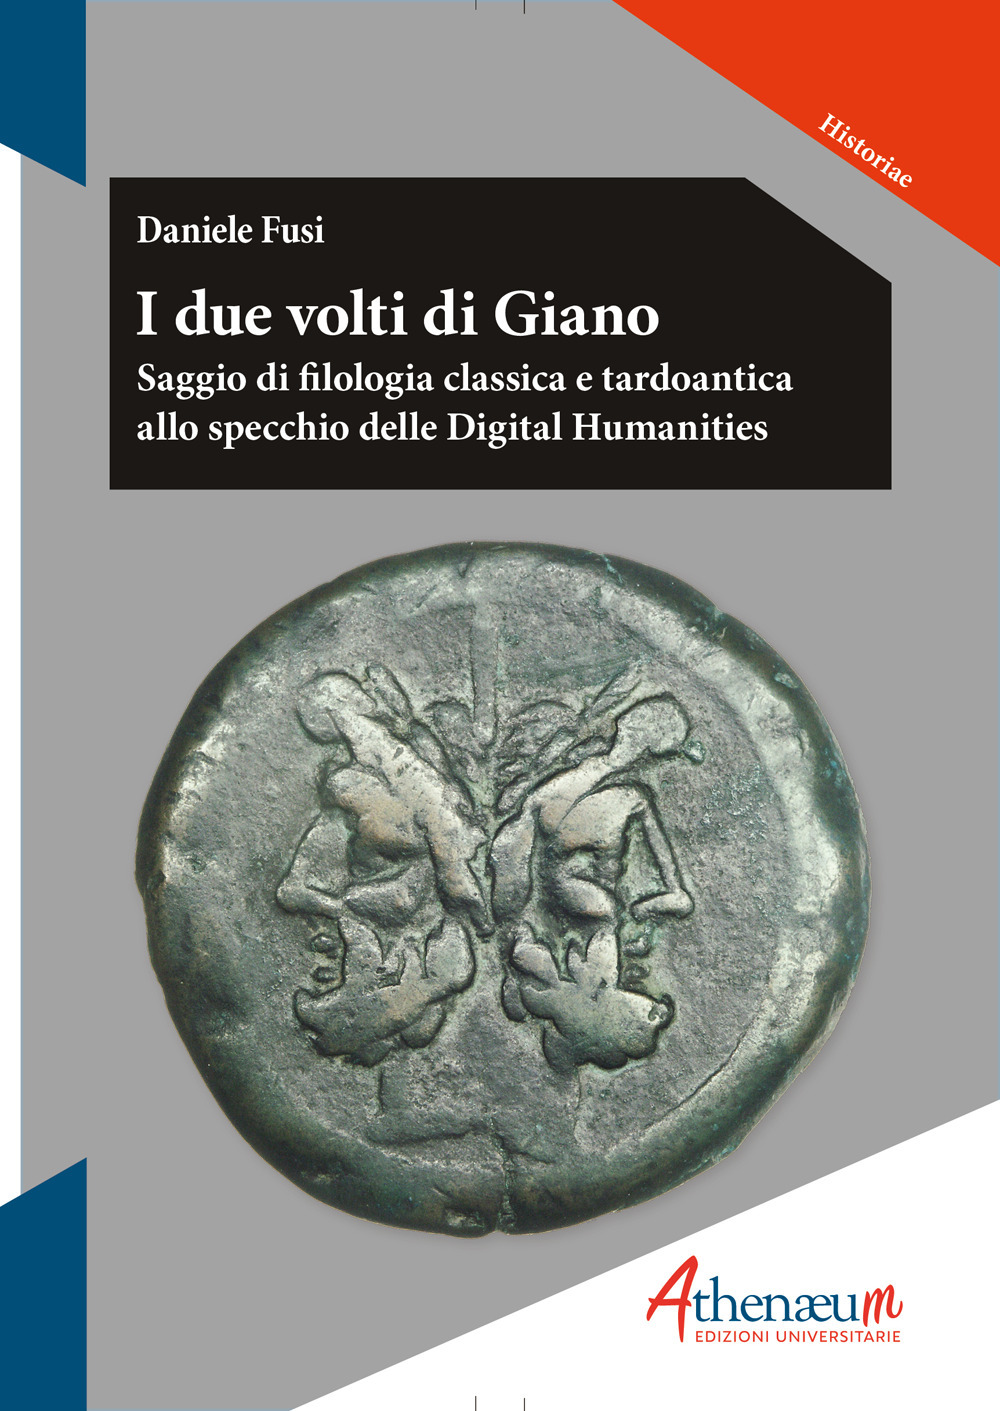 Libri Daniele Fusi - I Due Volti Di Giano NUOVO SIGILLATO, EDIZIONE DEL 11/10/2022 SUBITO DISPONIBILE